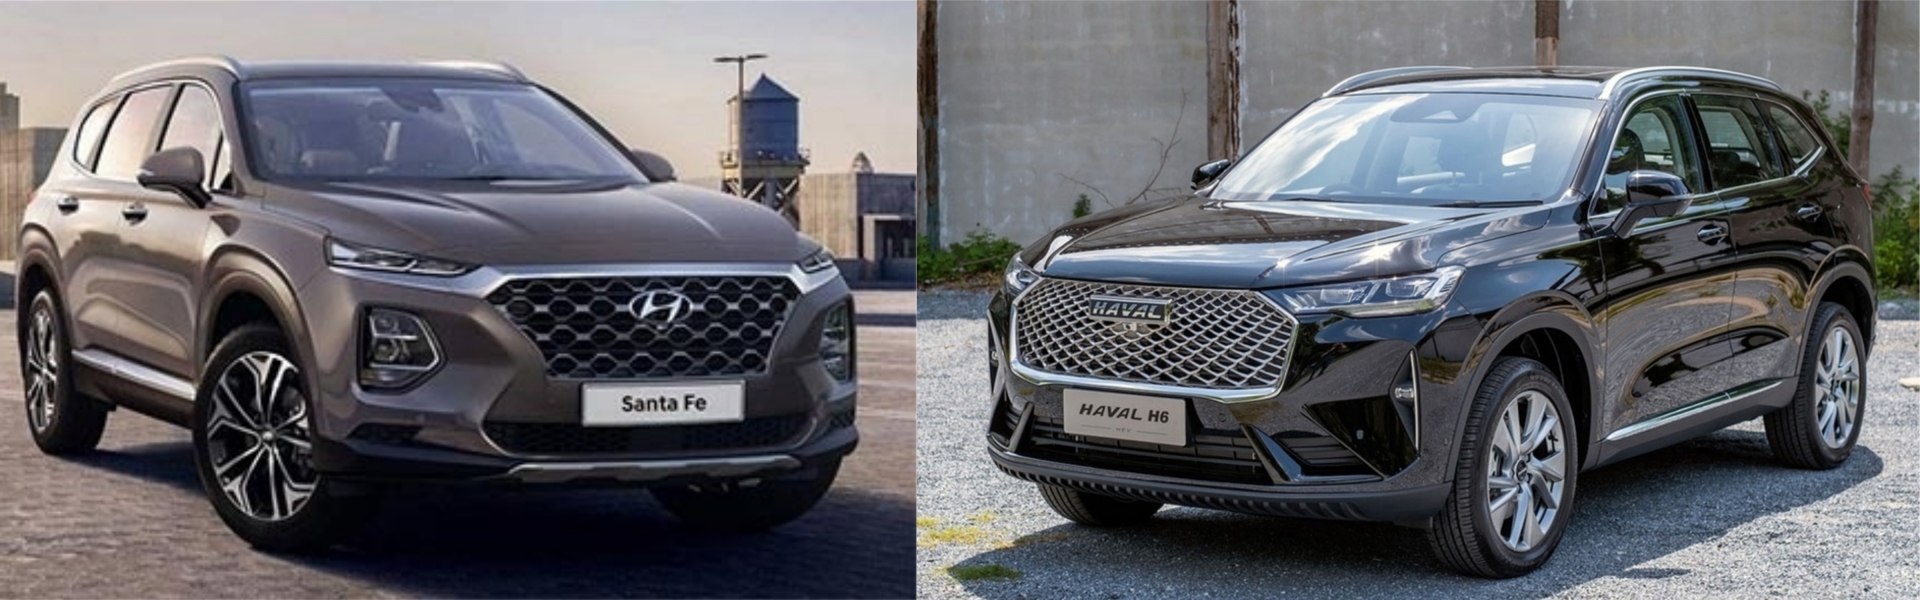 Hyundai Santa Fe 2020 (trái) và Haval H6 2021 (phải)